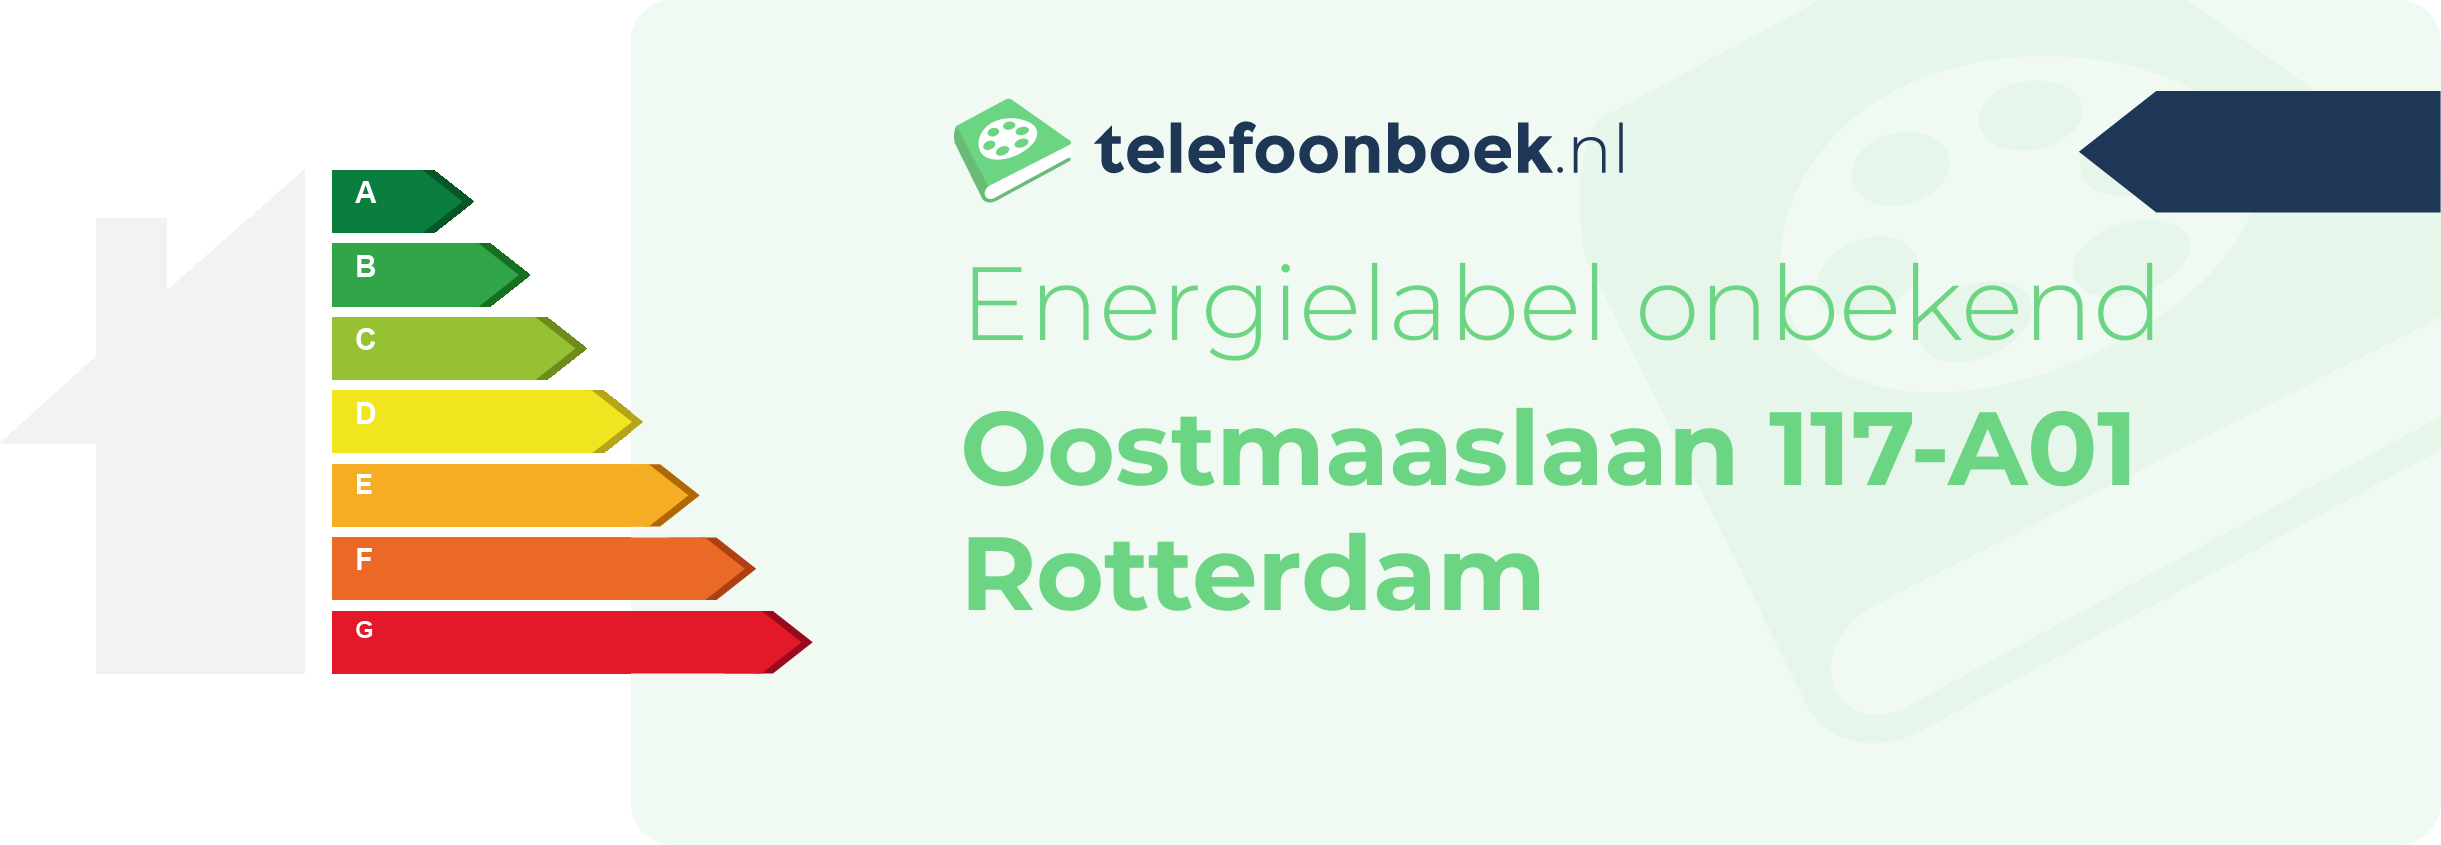 Energielabel Oostmaaslaan 117-A01 Rotterdam